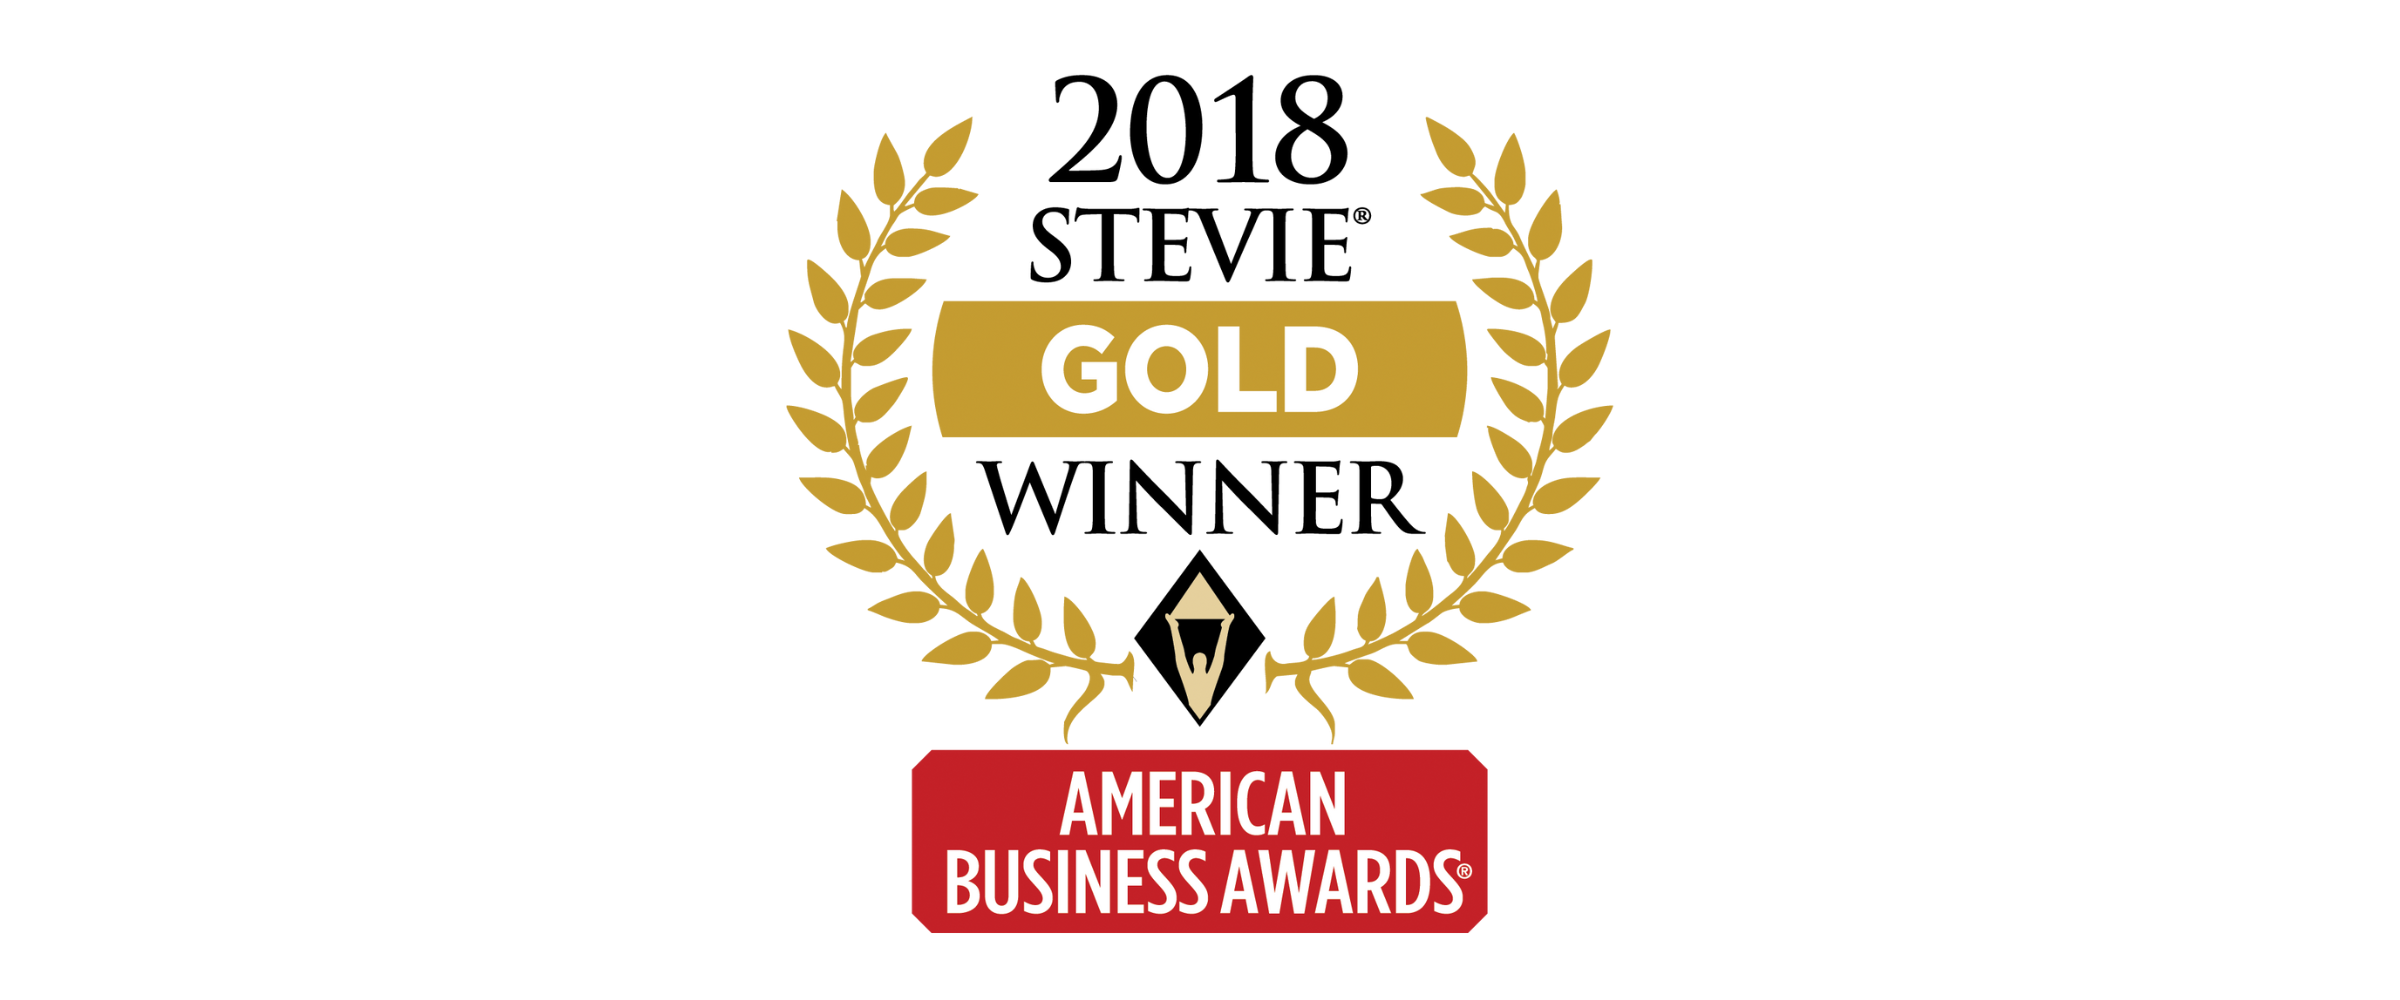 Gold Stevie Award Logo for 2018